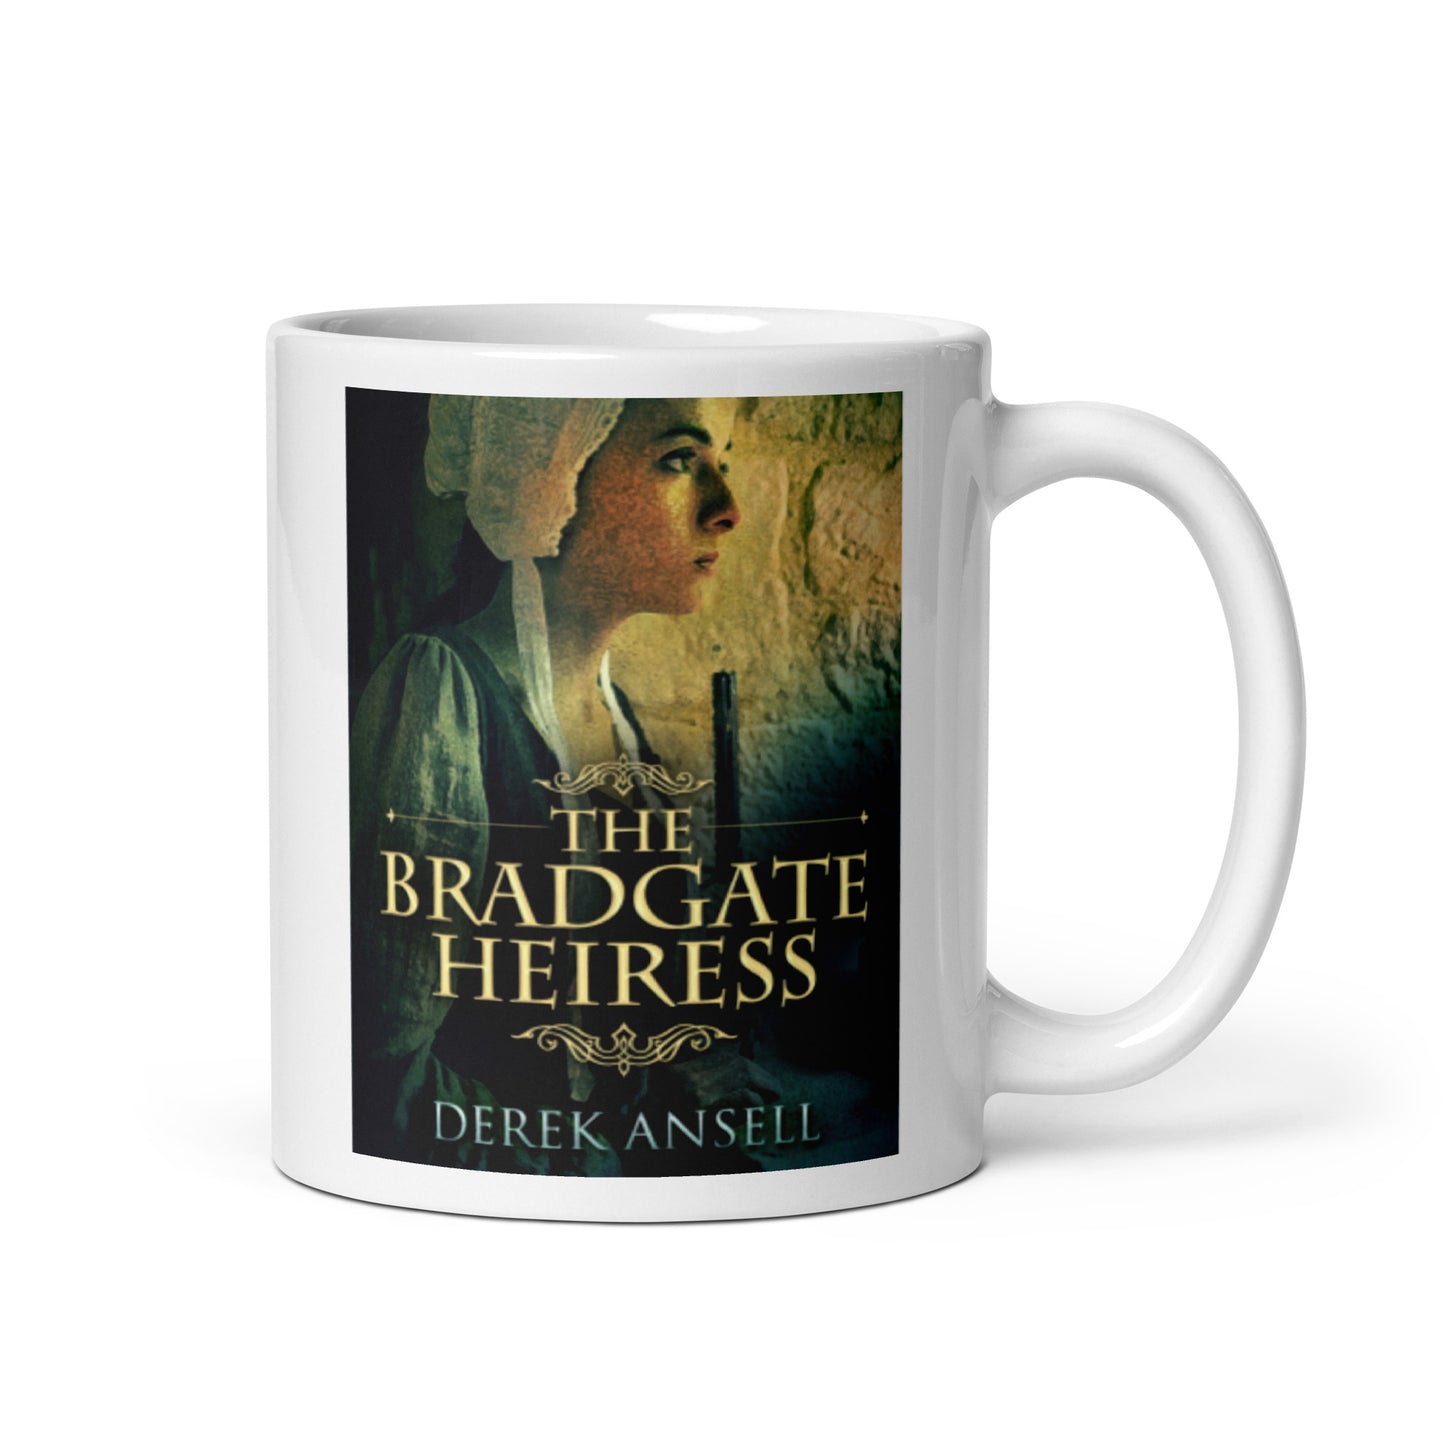 The Bradgate Heiress - White Coffee Mug